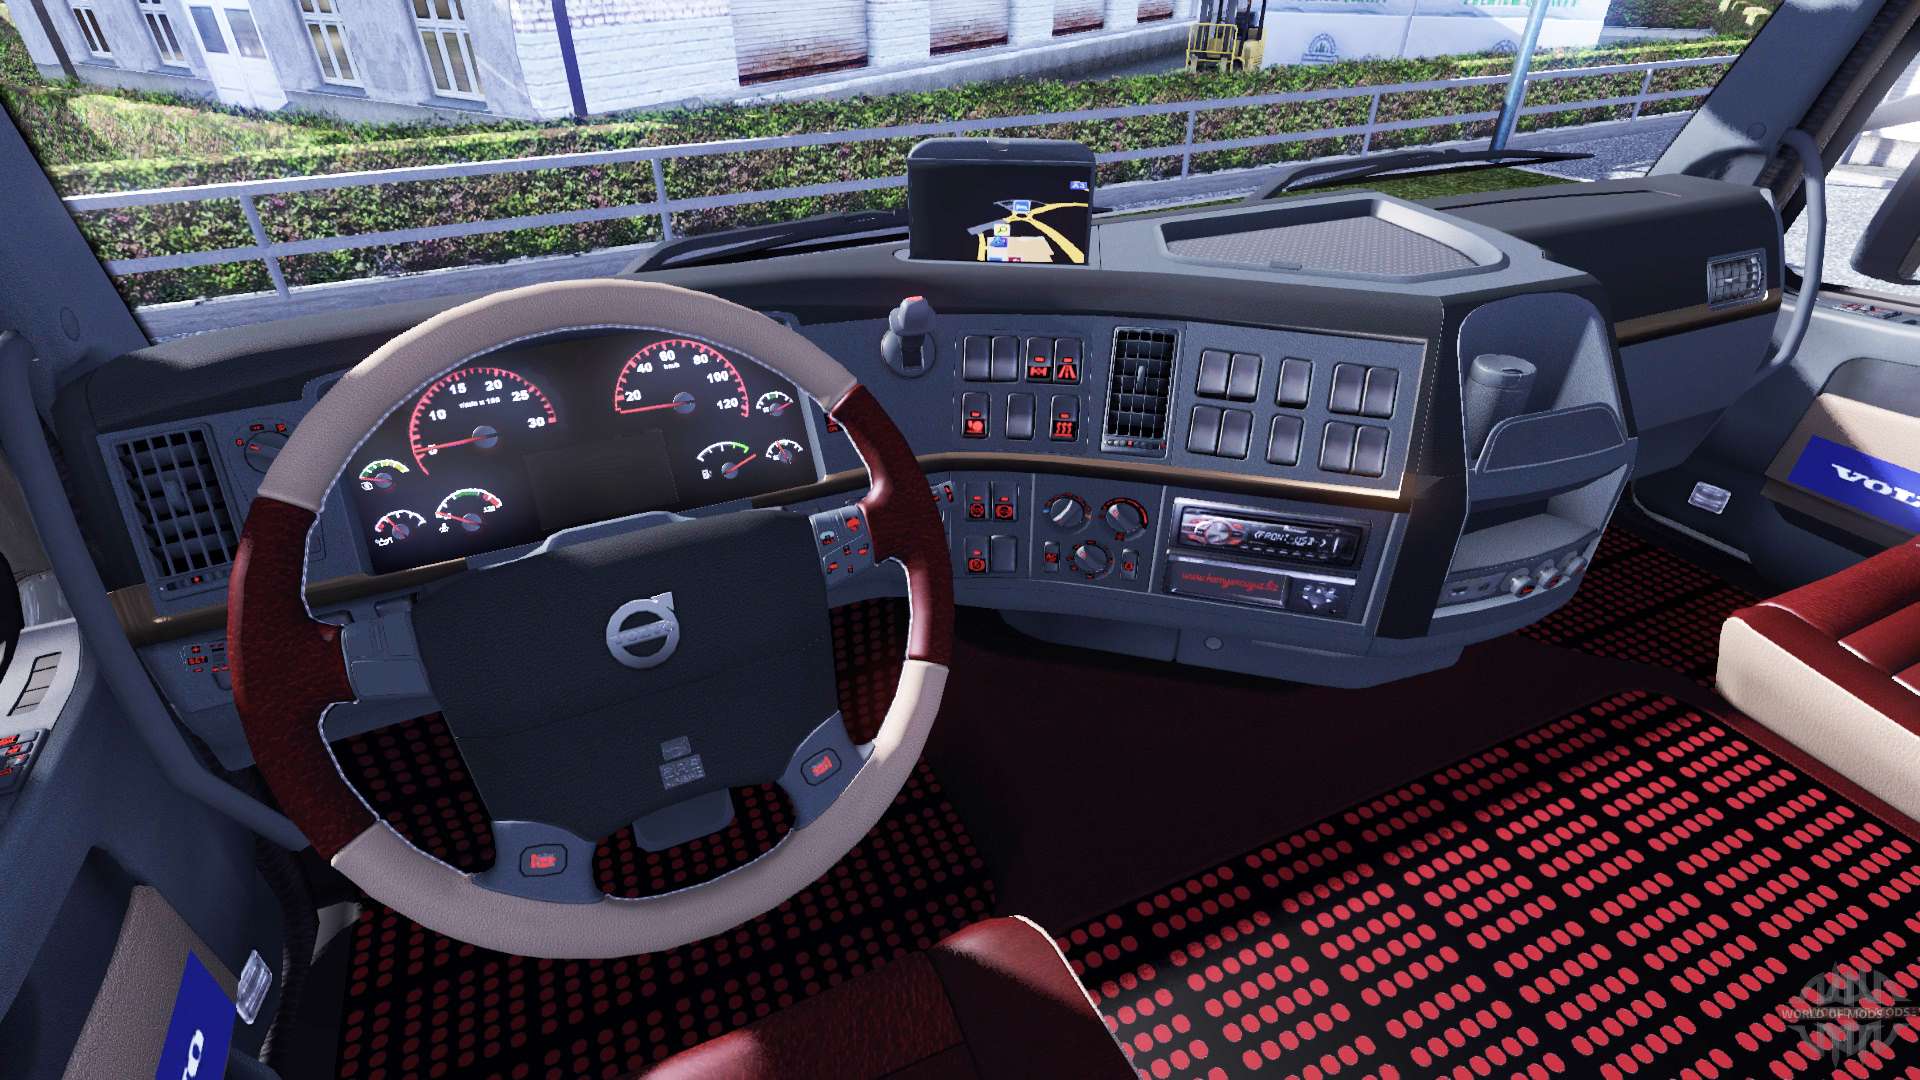 download euro truck simulator 2 torennt